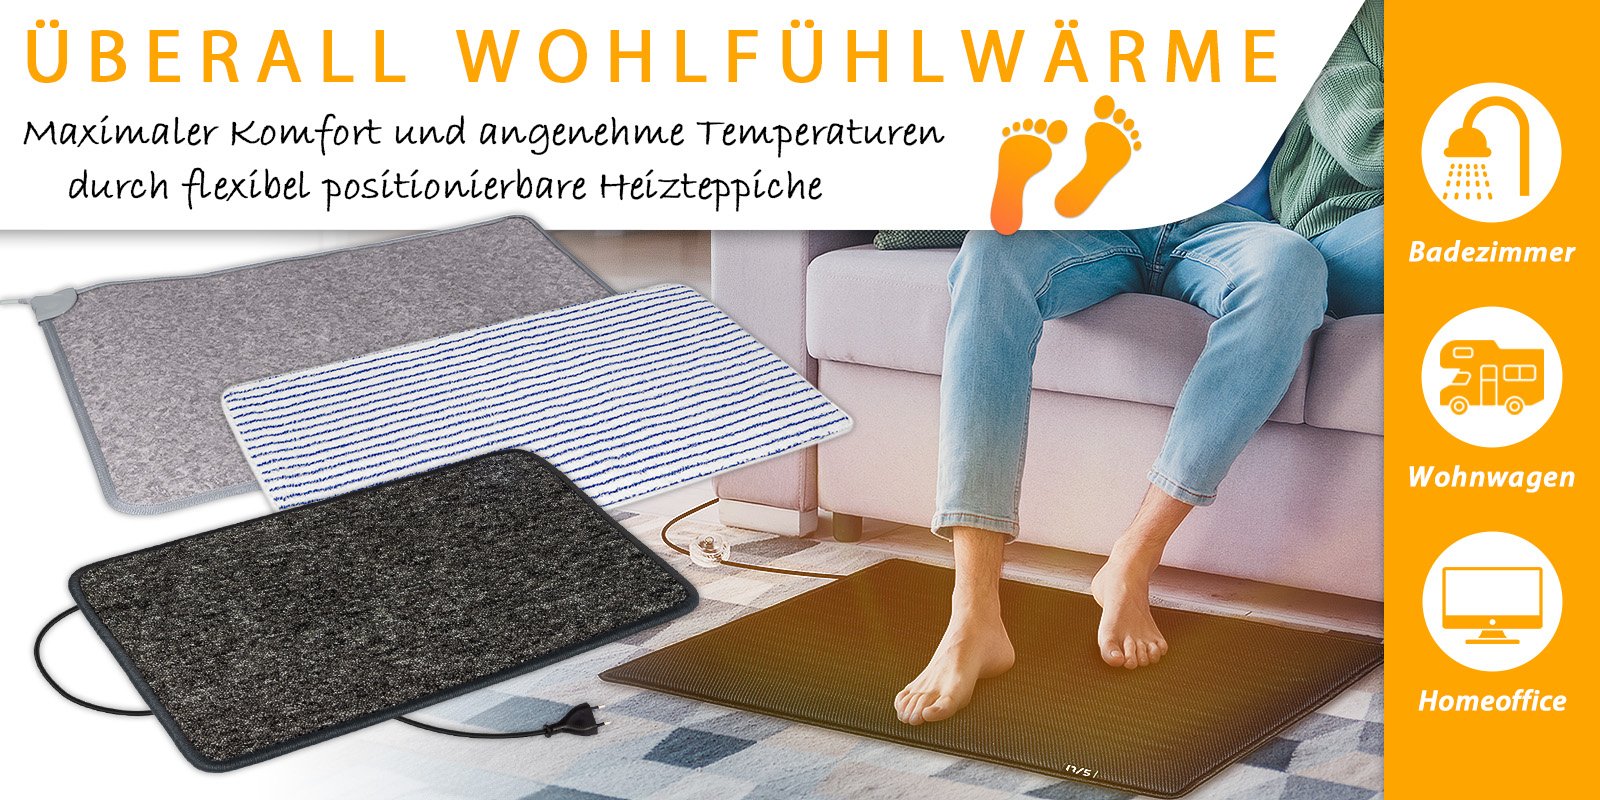 Heizteppiche - Einfach auslegen und die Wärme an den Füßen genießen